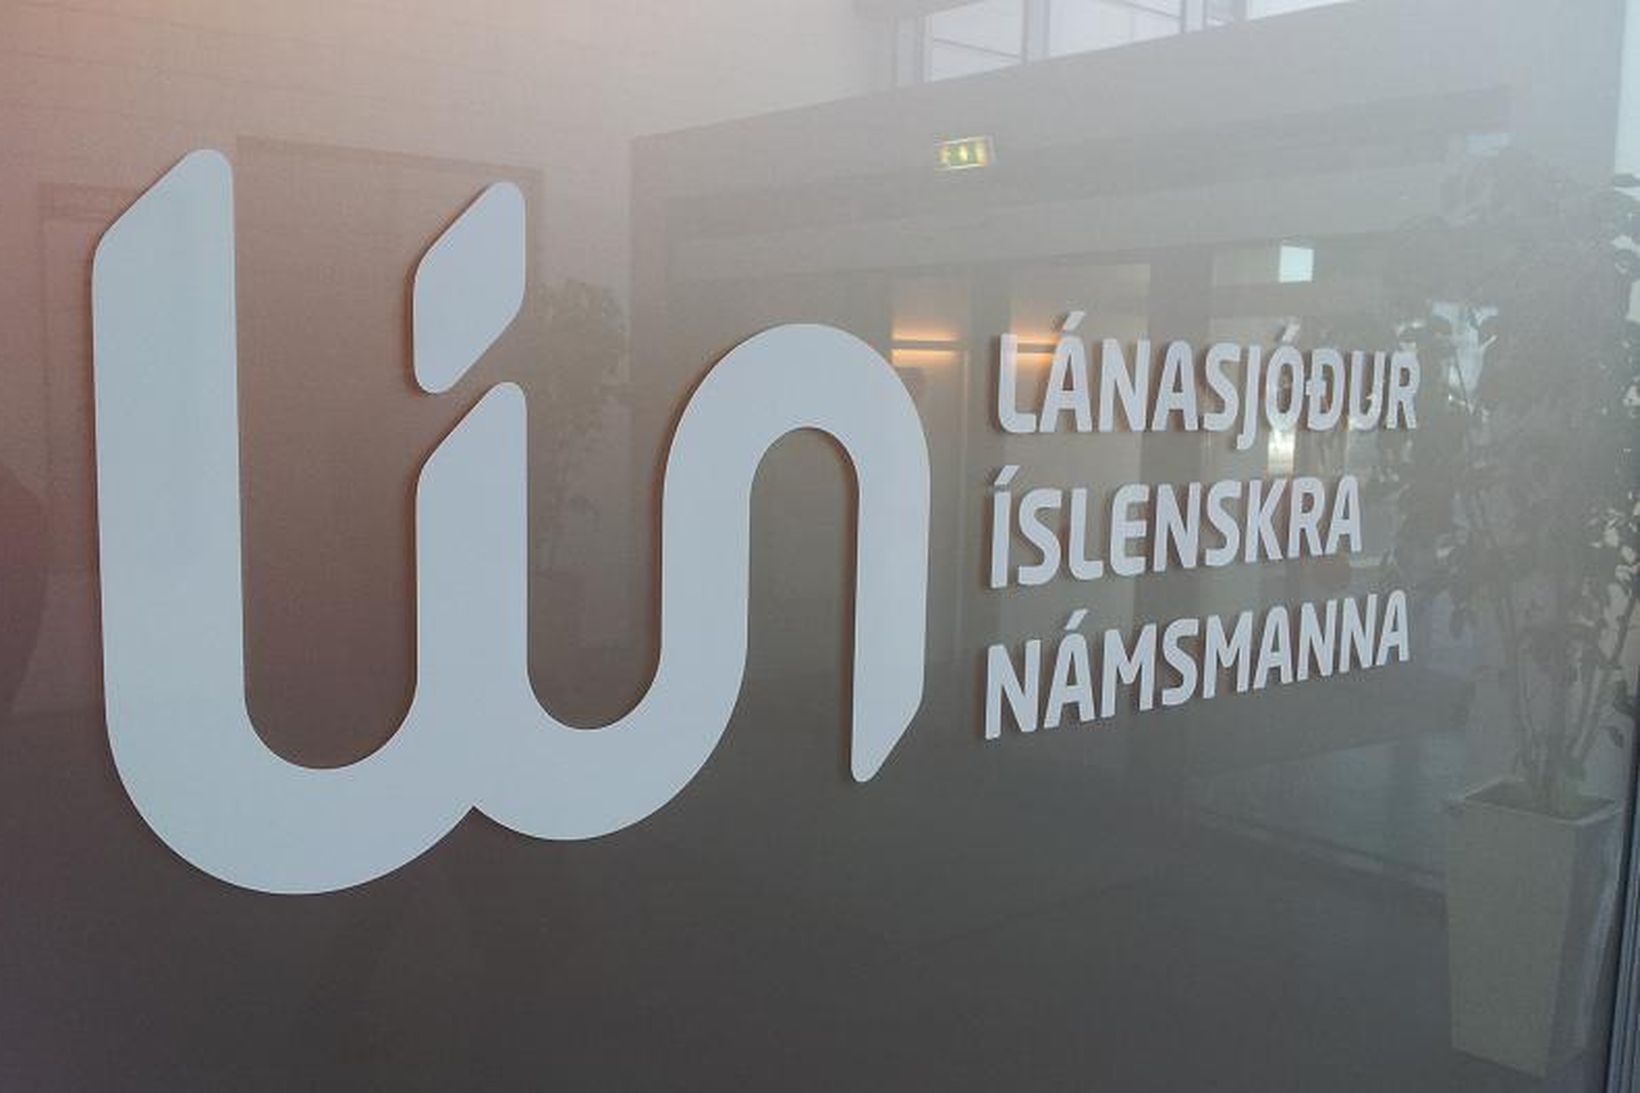 Lánasjóður íslenskra námsmanna (LÍN).